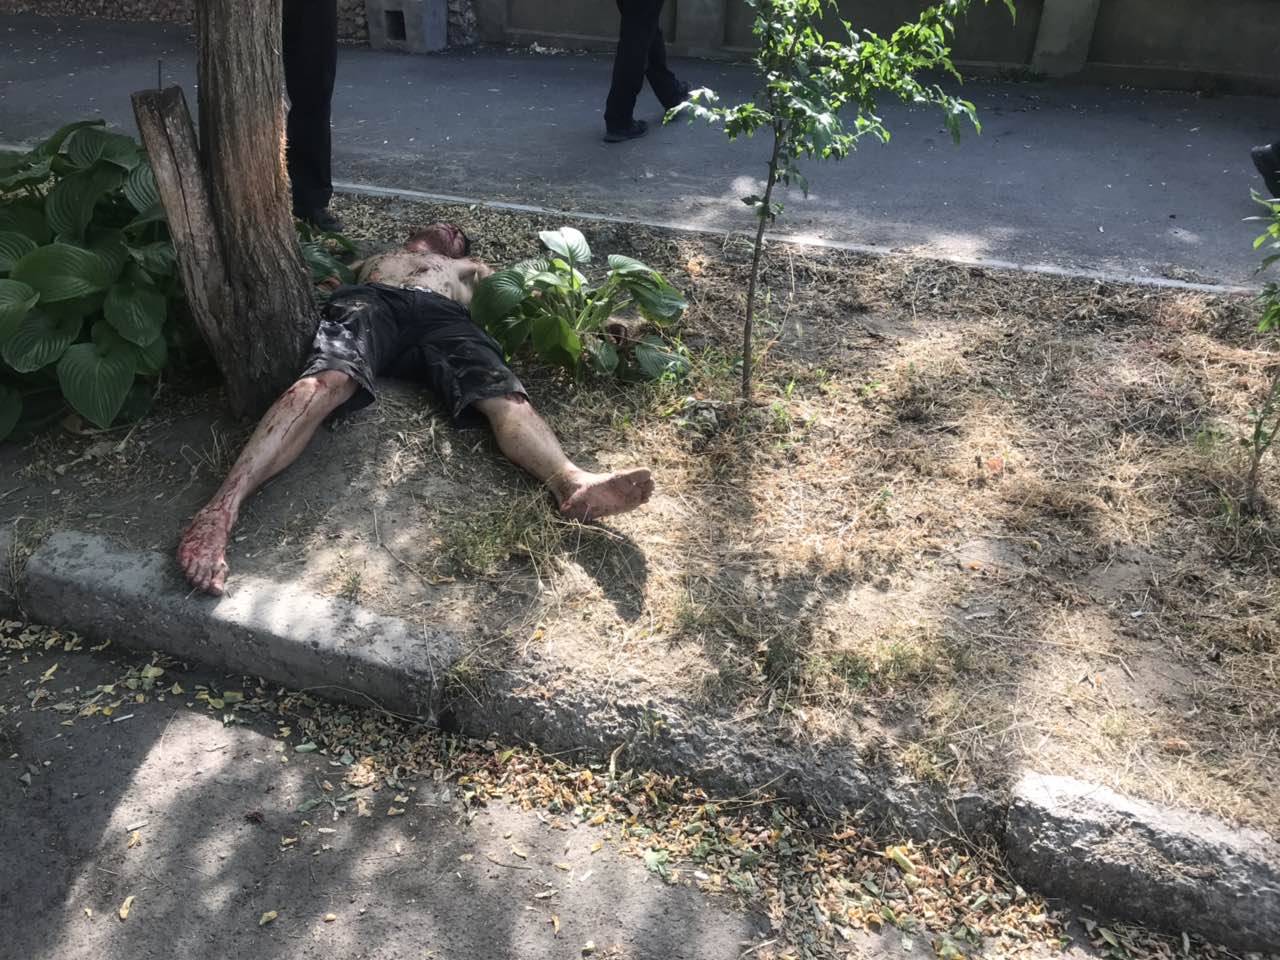 Бился в конвульсиях и громко кричал: на одной из улиц Измаила полицейские обнаружили неадекватного мужчину в крови (фото +18)